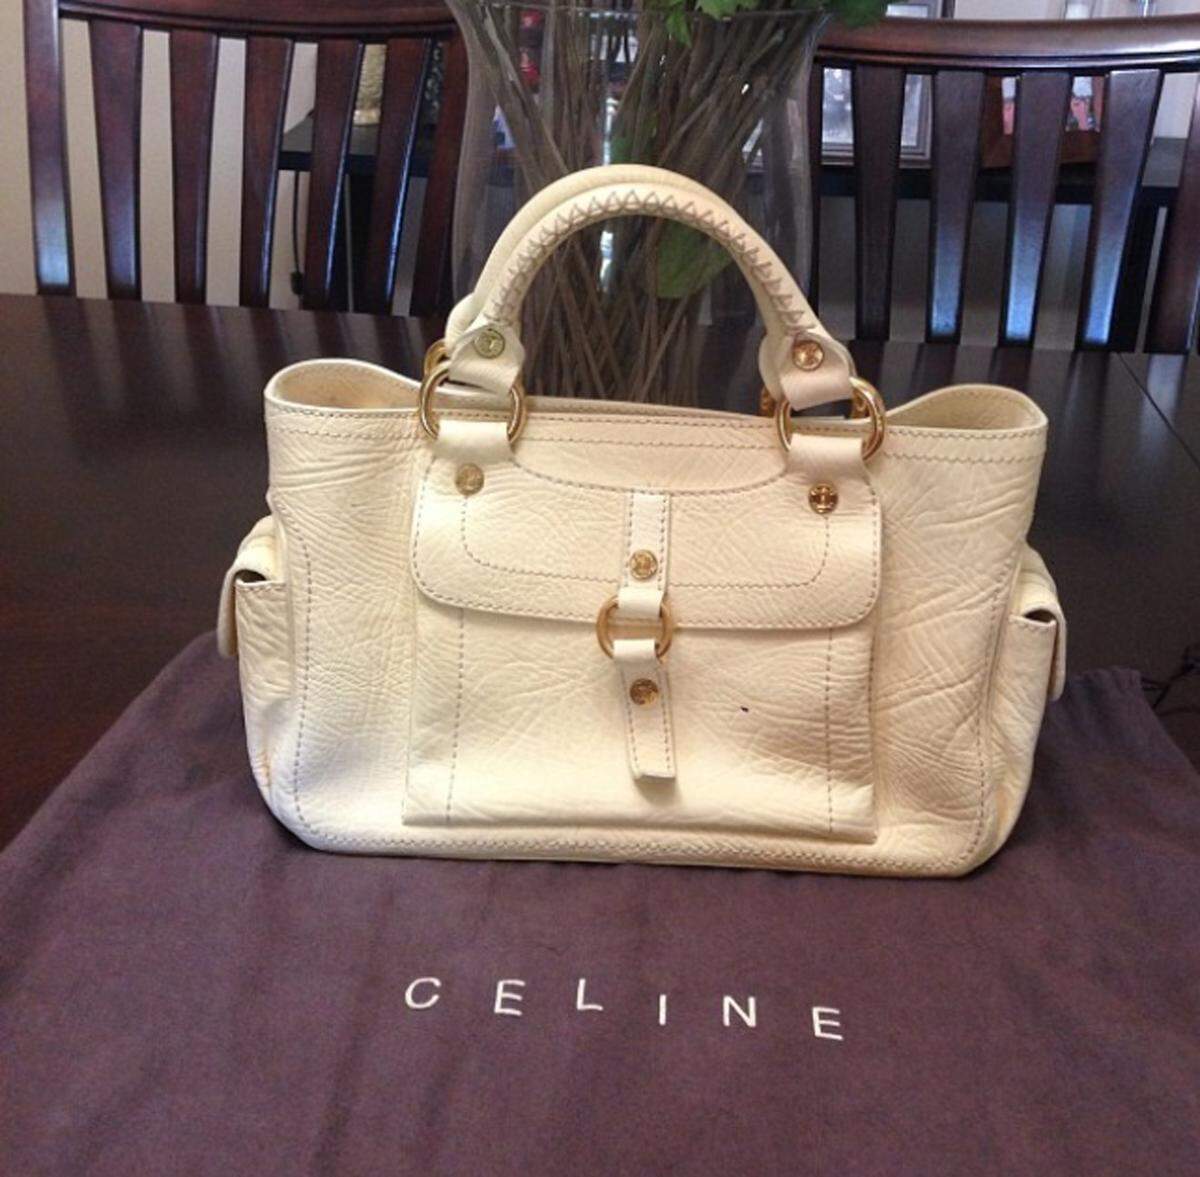 Die Boogie Bag von Céline schaffte es noch unter die Top 10.